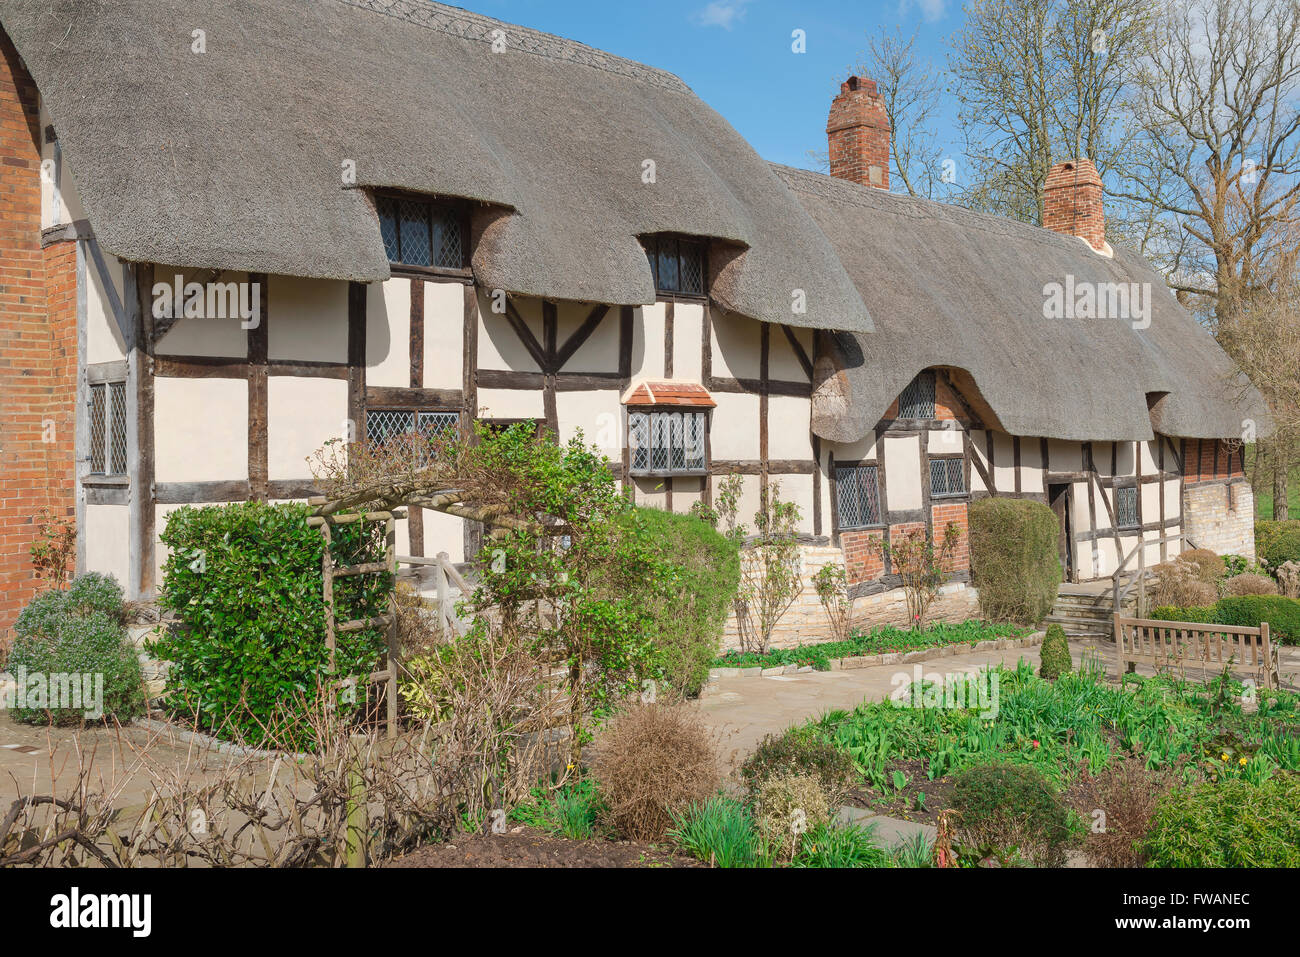 Typisches englisches Landhaus, Blick auf Anne Hathaway's Cottage und Garten in Shotley, in der Nähe von Stratford Upon Avon, England, Großbritannien Stockfoto